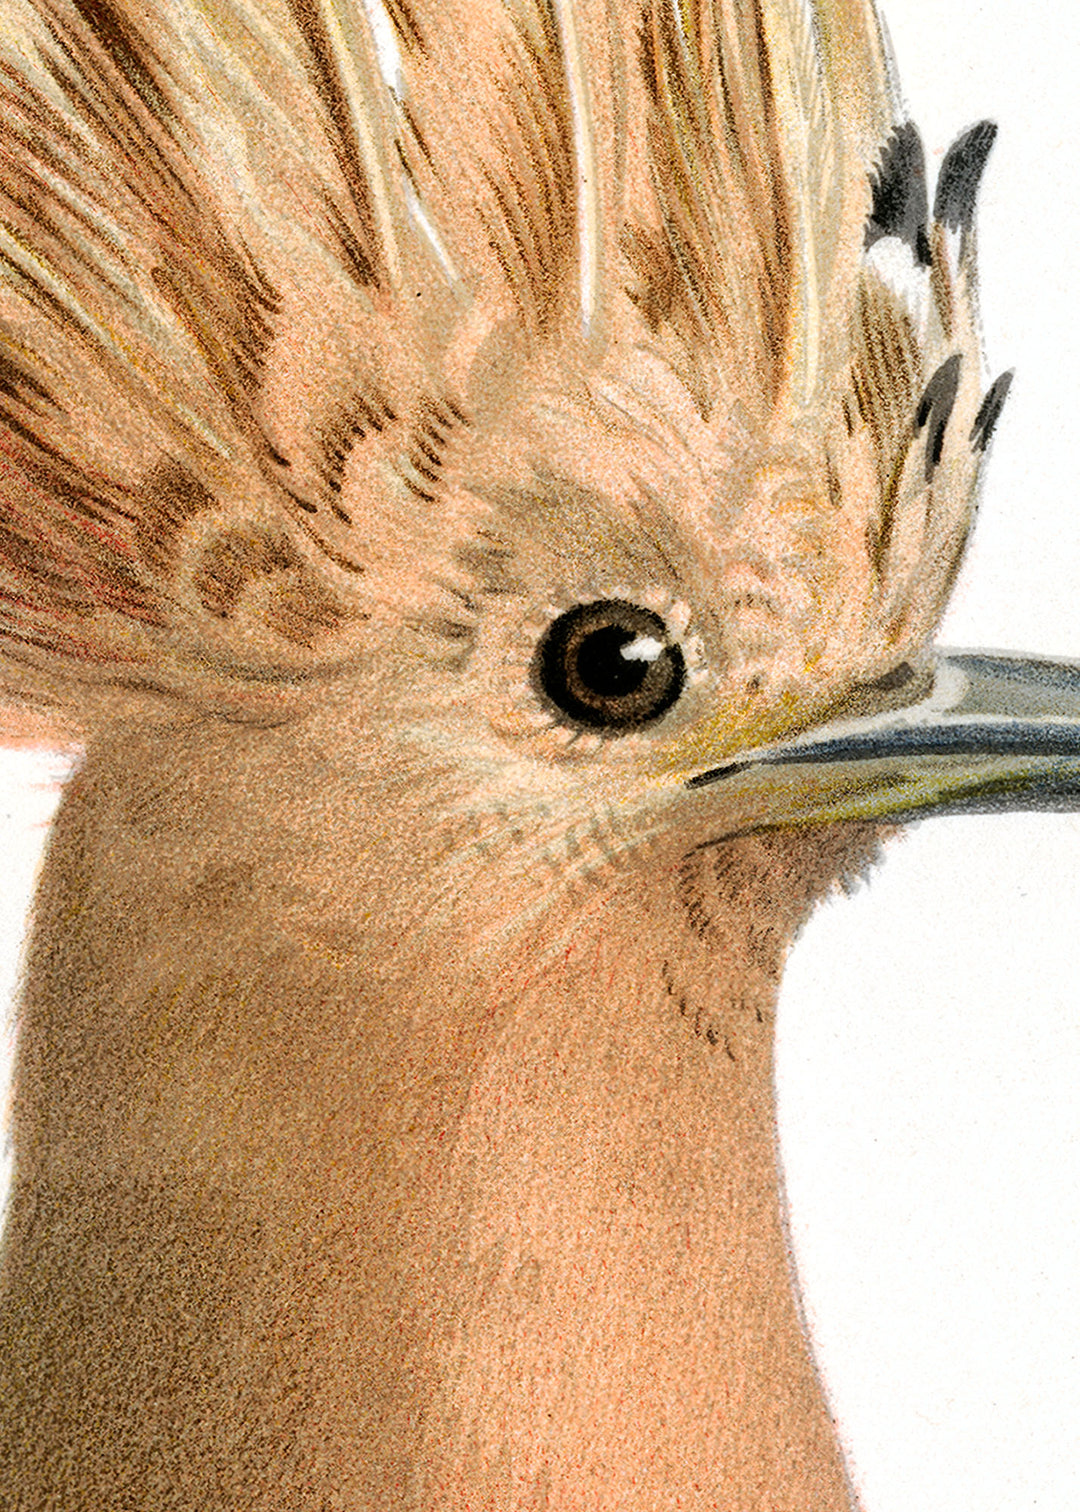 Fågeln Härfågel på klassisk vintage poster/affisch